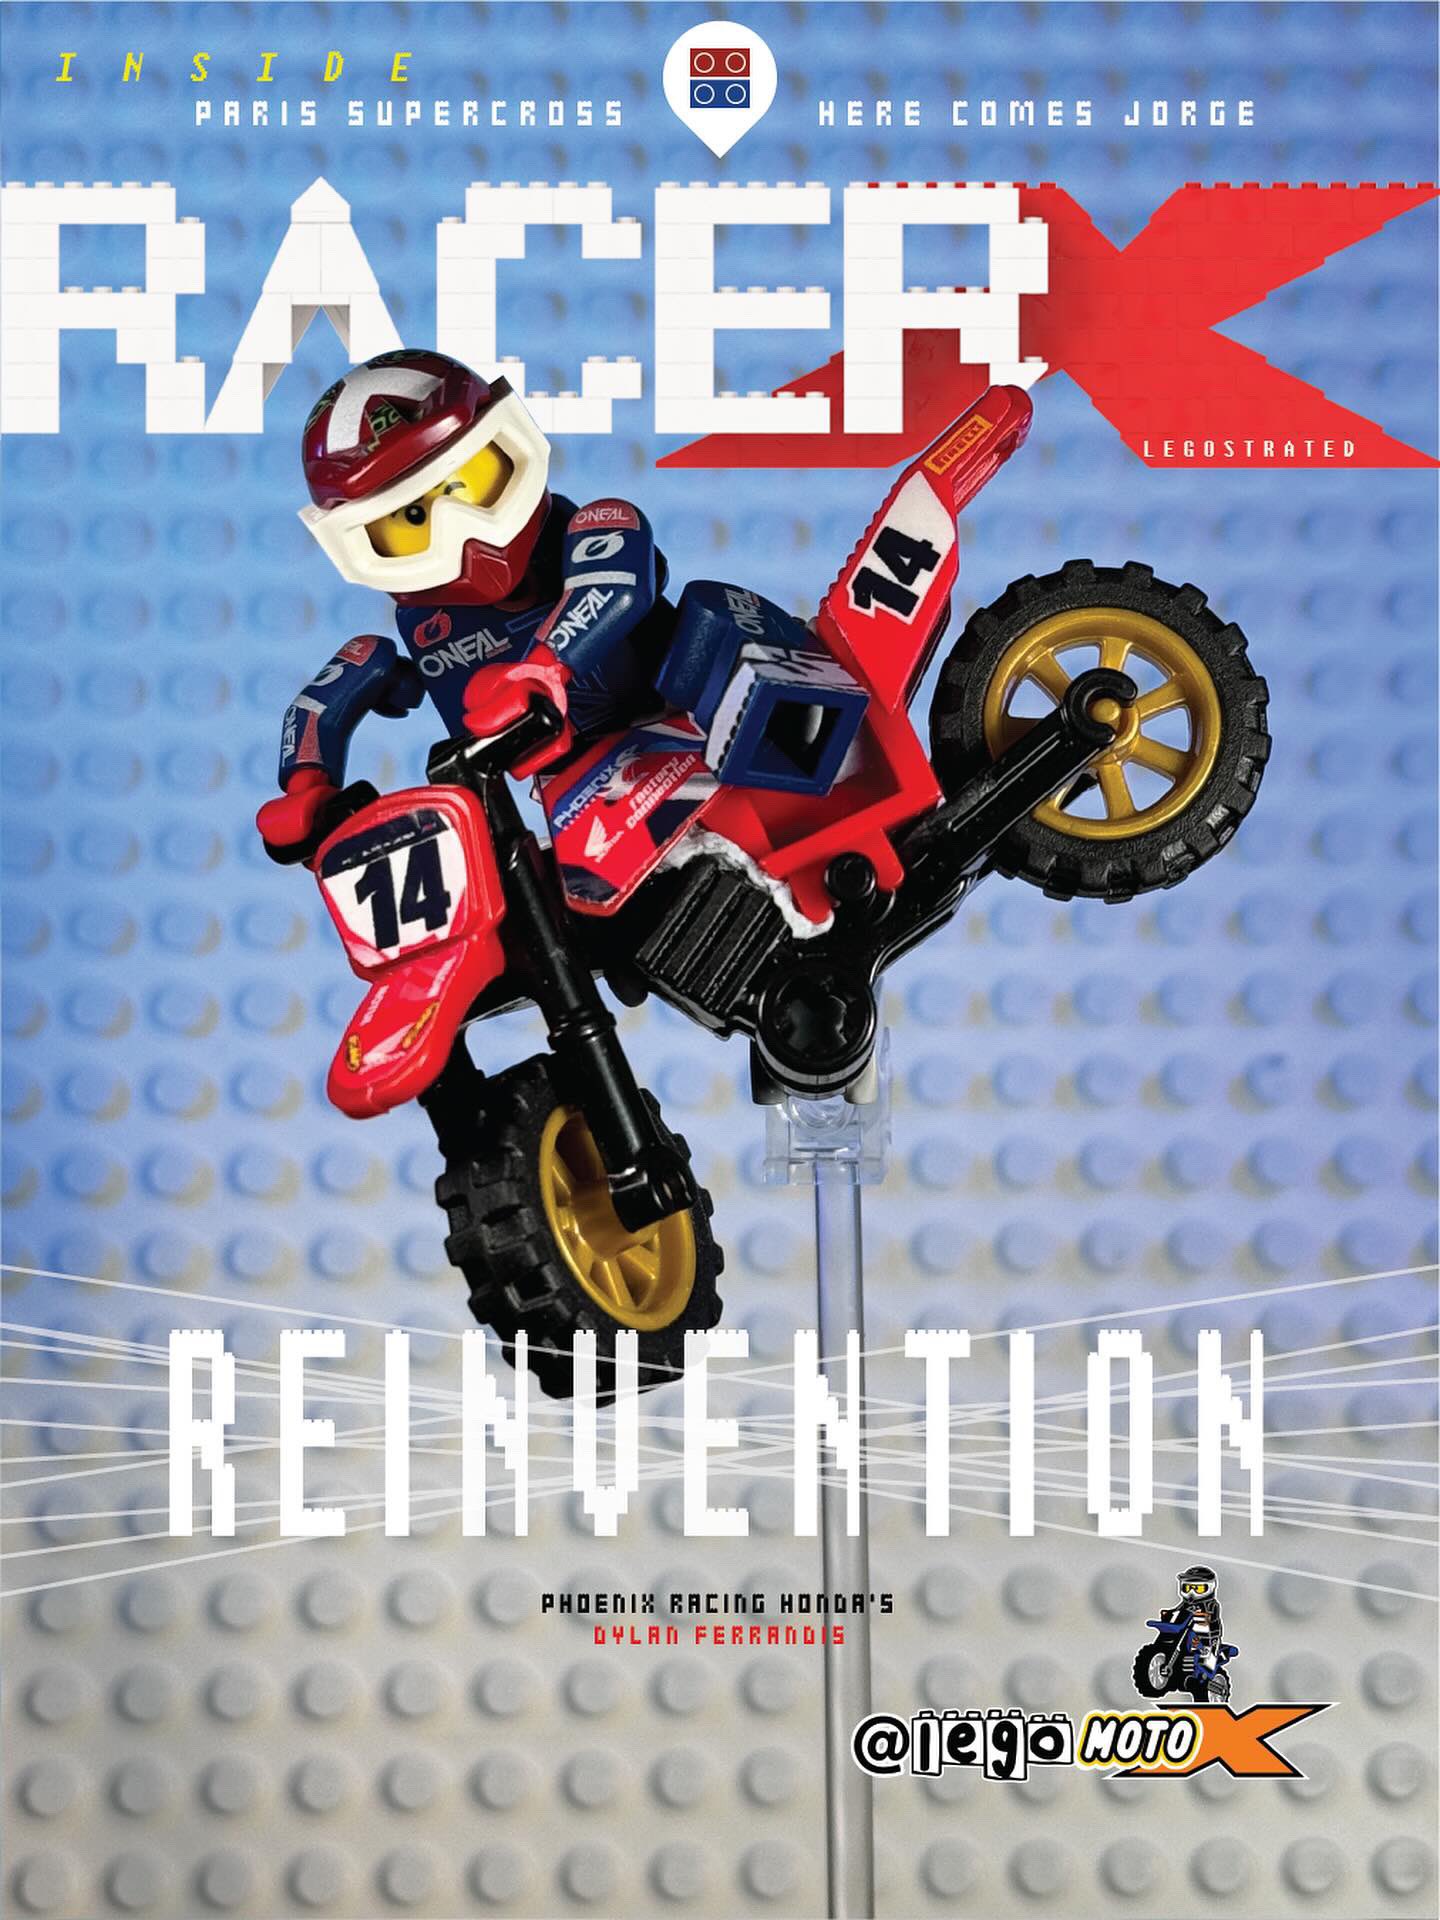 Racer X - Motocross & Supercross News